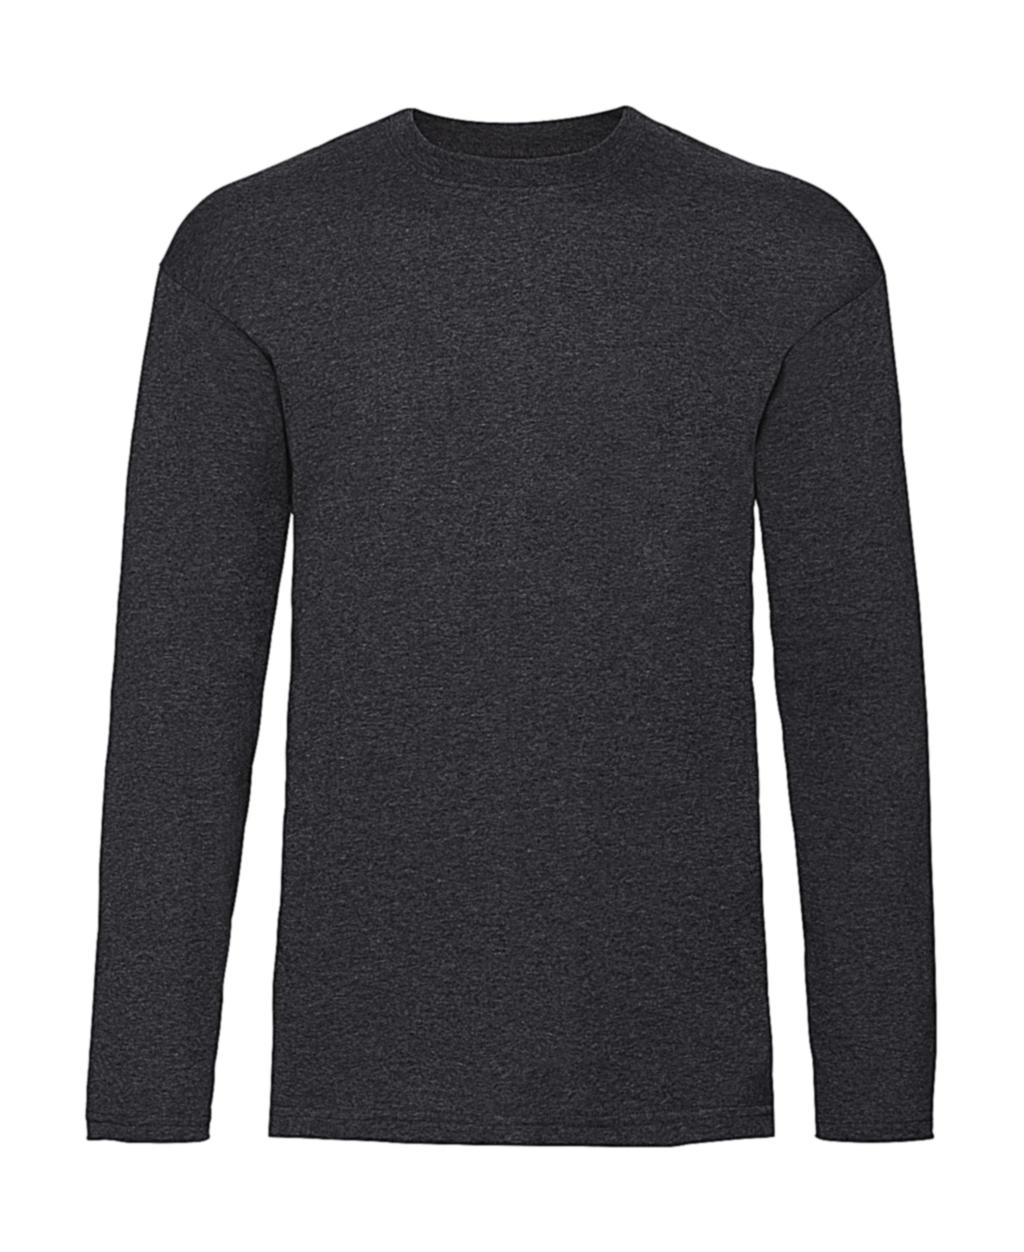 Tričko s dlhými rukávmi Value Weight - dark heather grey